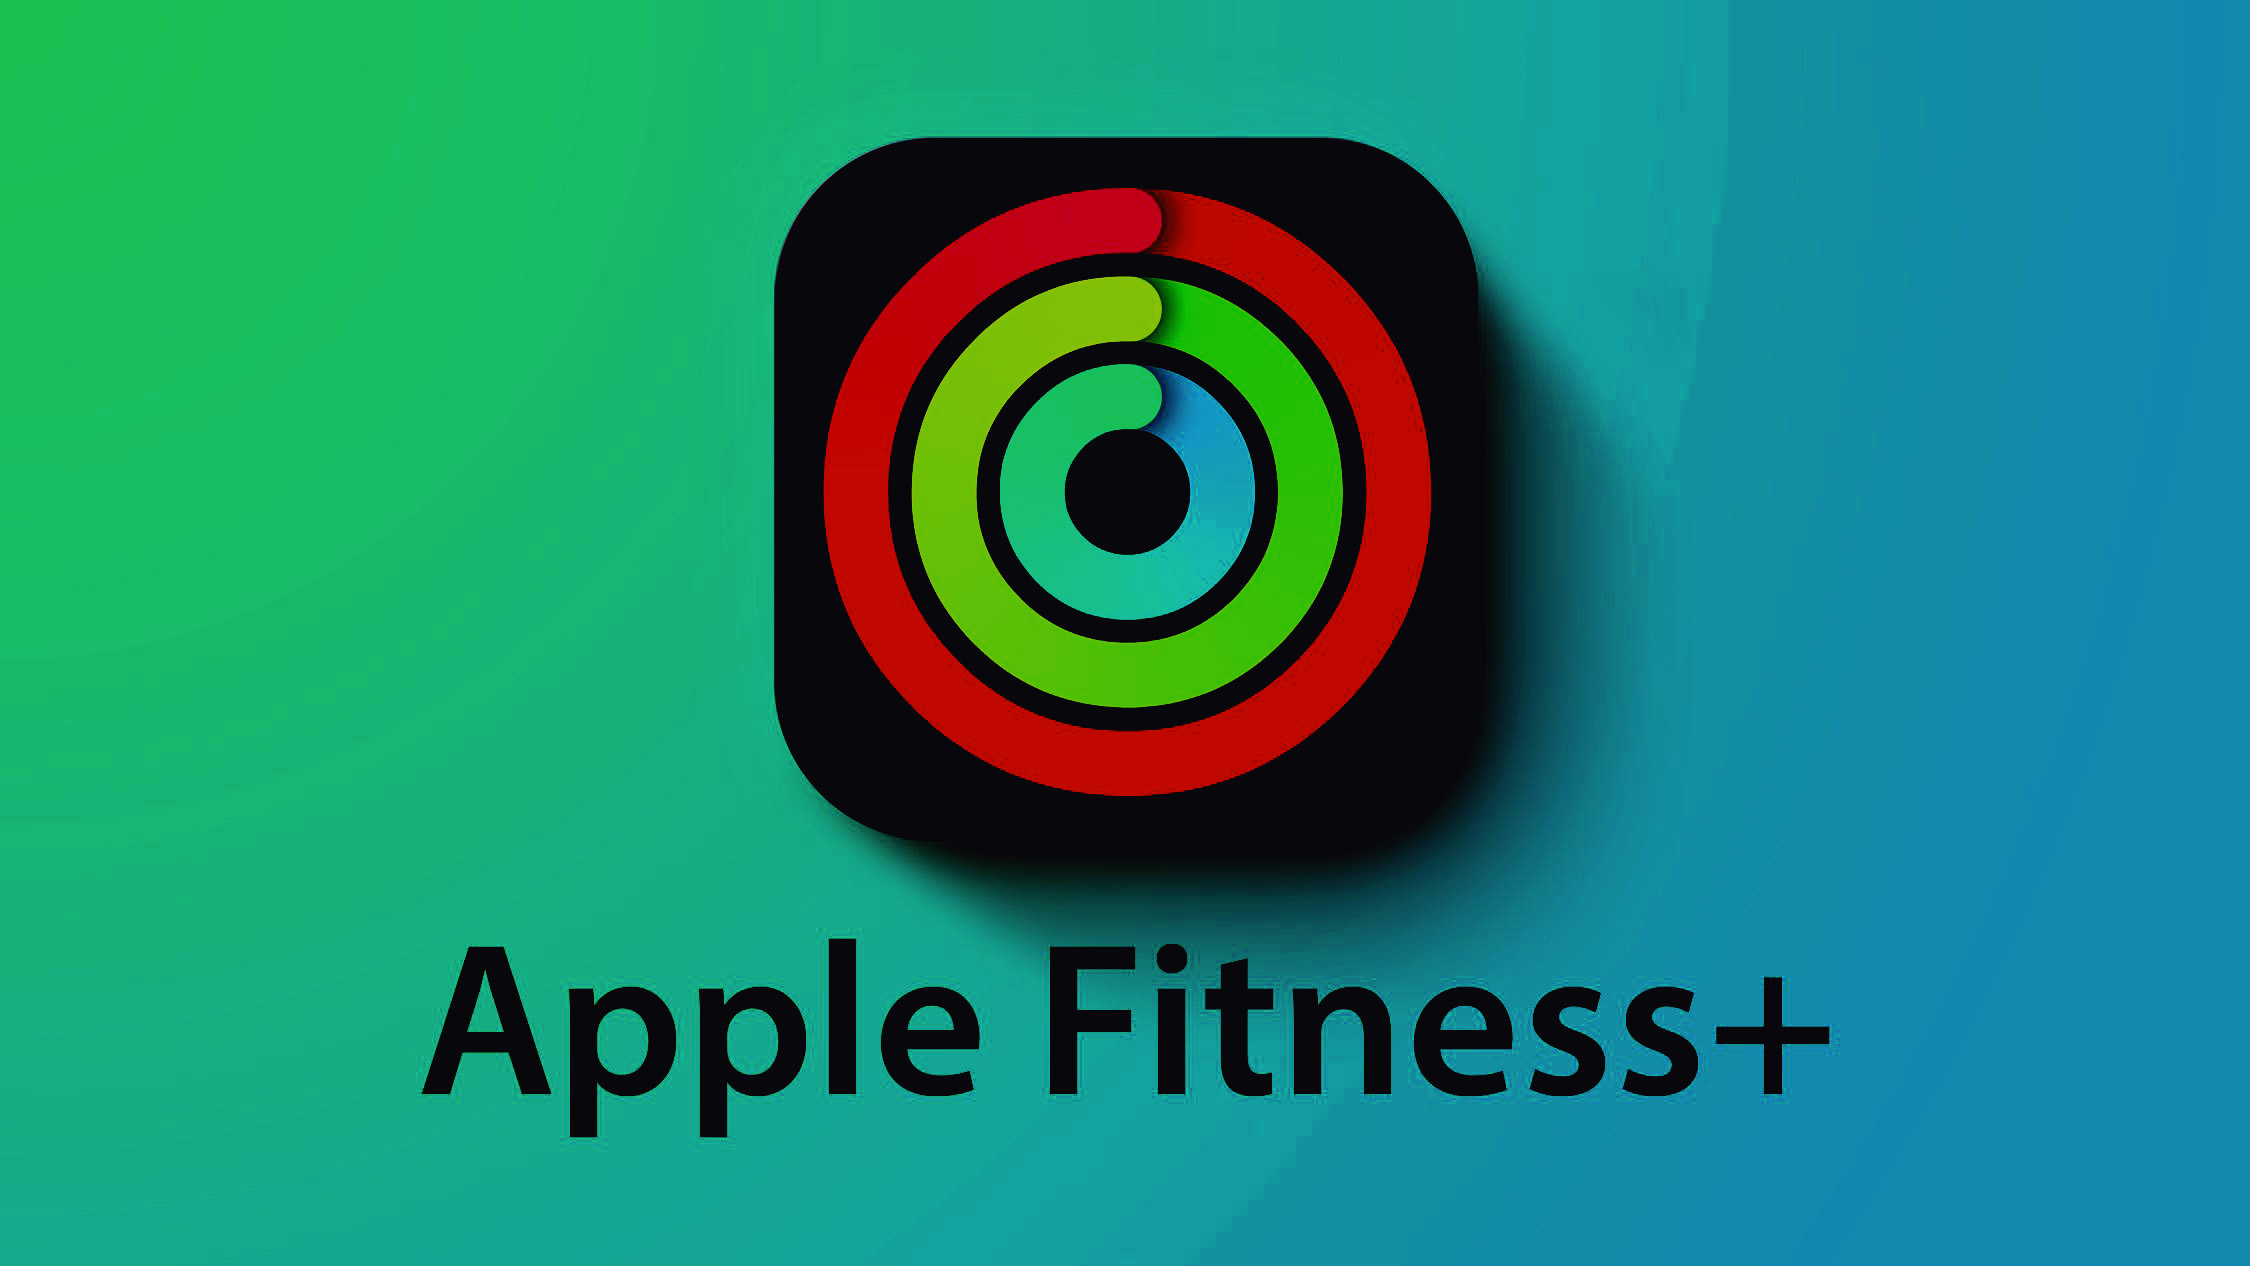 Fitness+ ist jetzt auf dem neuen macOS Monterey verfügbar